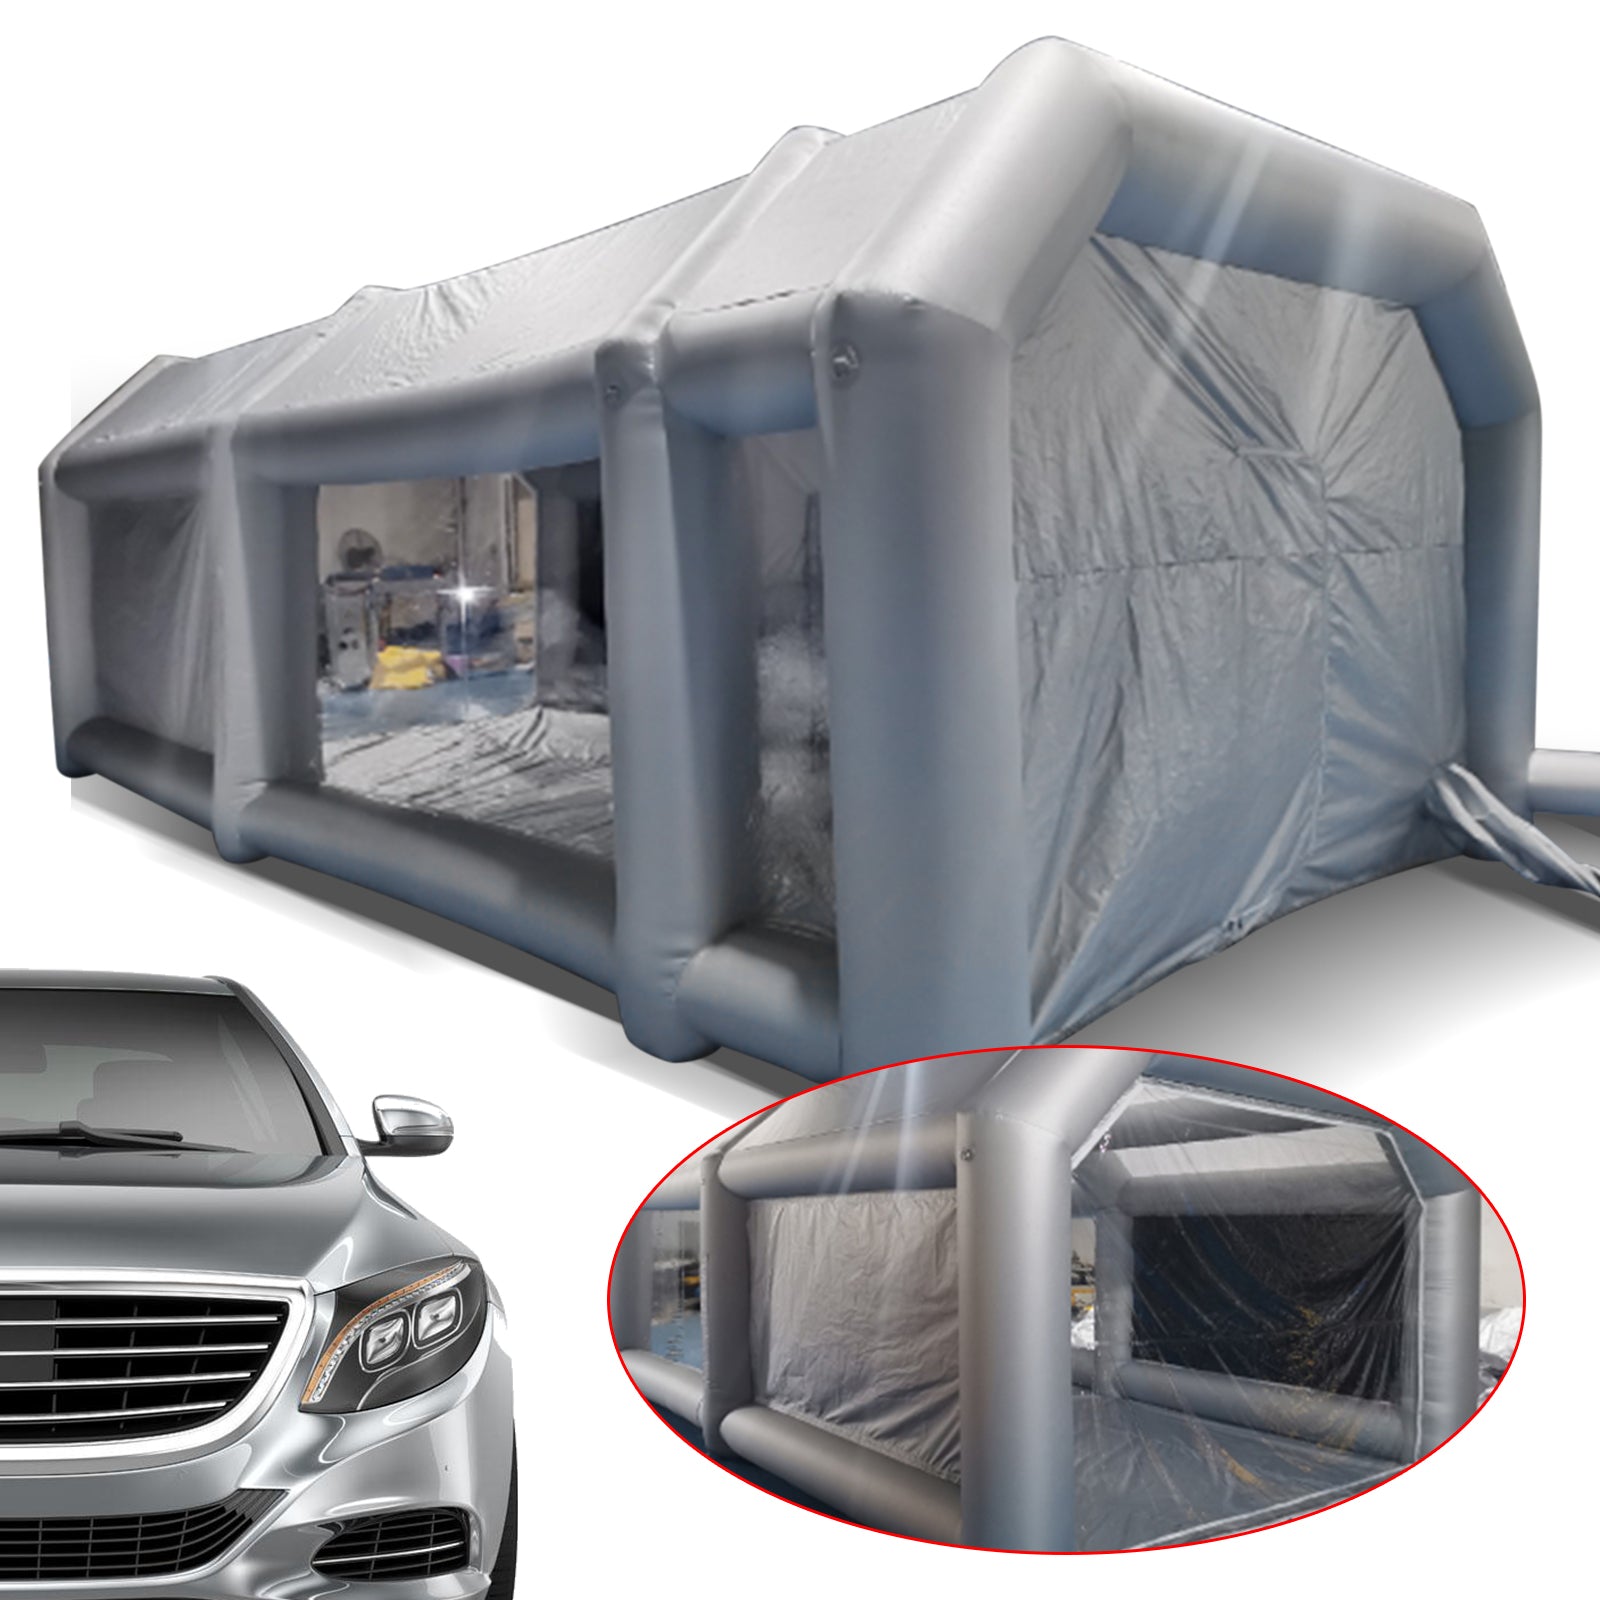 8 x 4 x 3 m, tenda gonfiabile,tenda verniciata gonfiabile per auto garage tenda di lavoro attività esposizioni e campeggio,tessuto PVC+Oxford